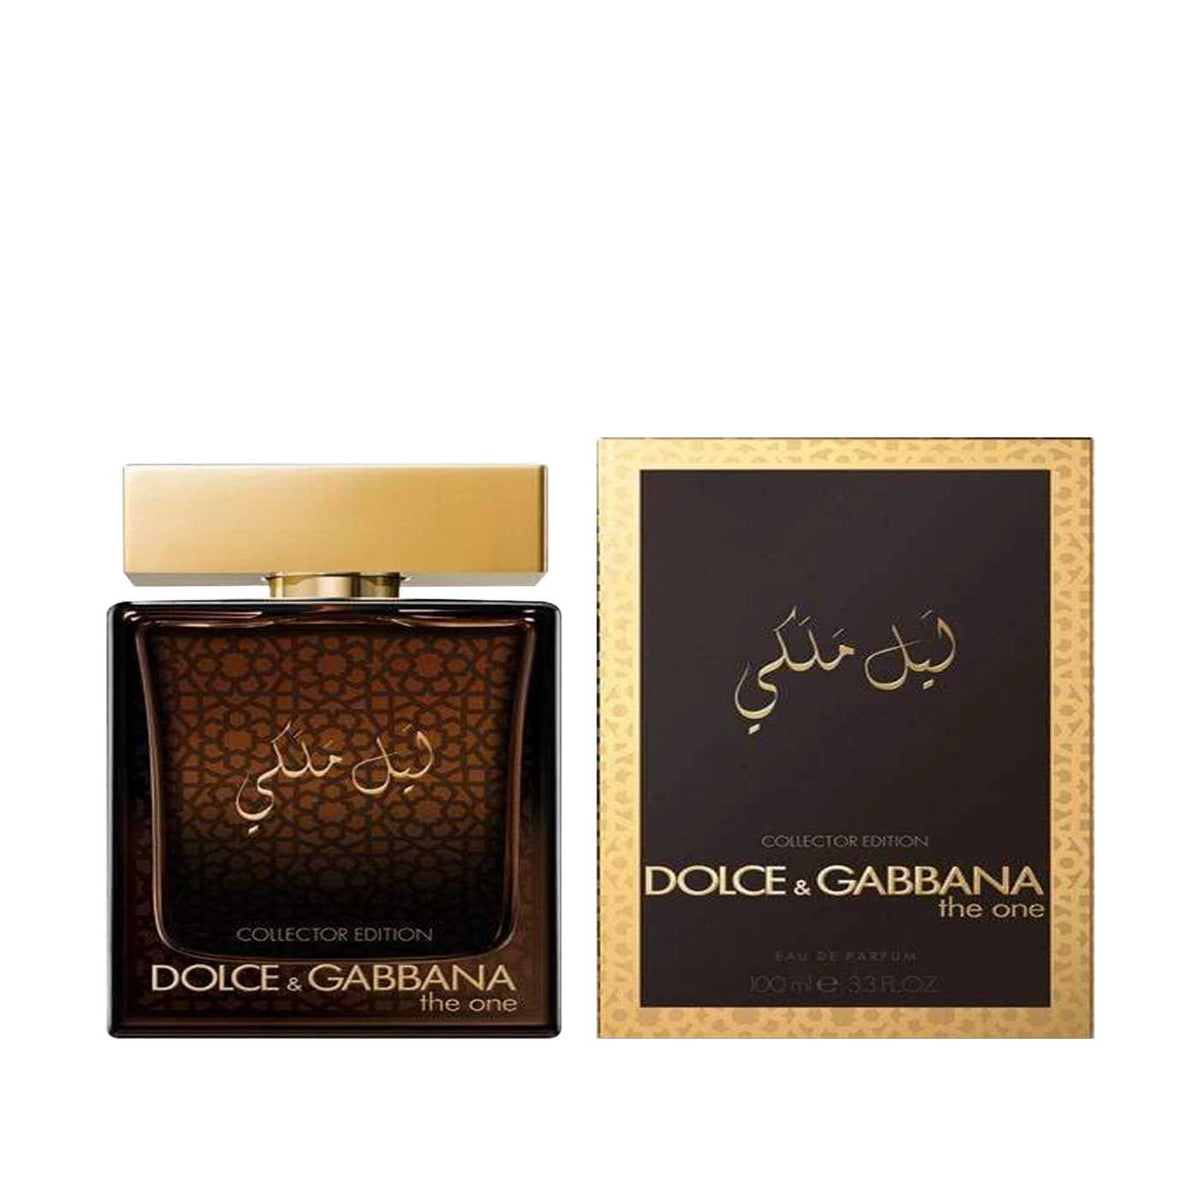 Dolce & Gabbana The One Royal Night Collector Edition | Ramfa Beauty